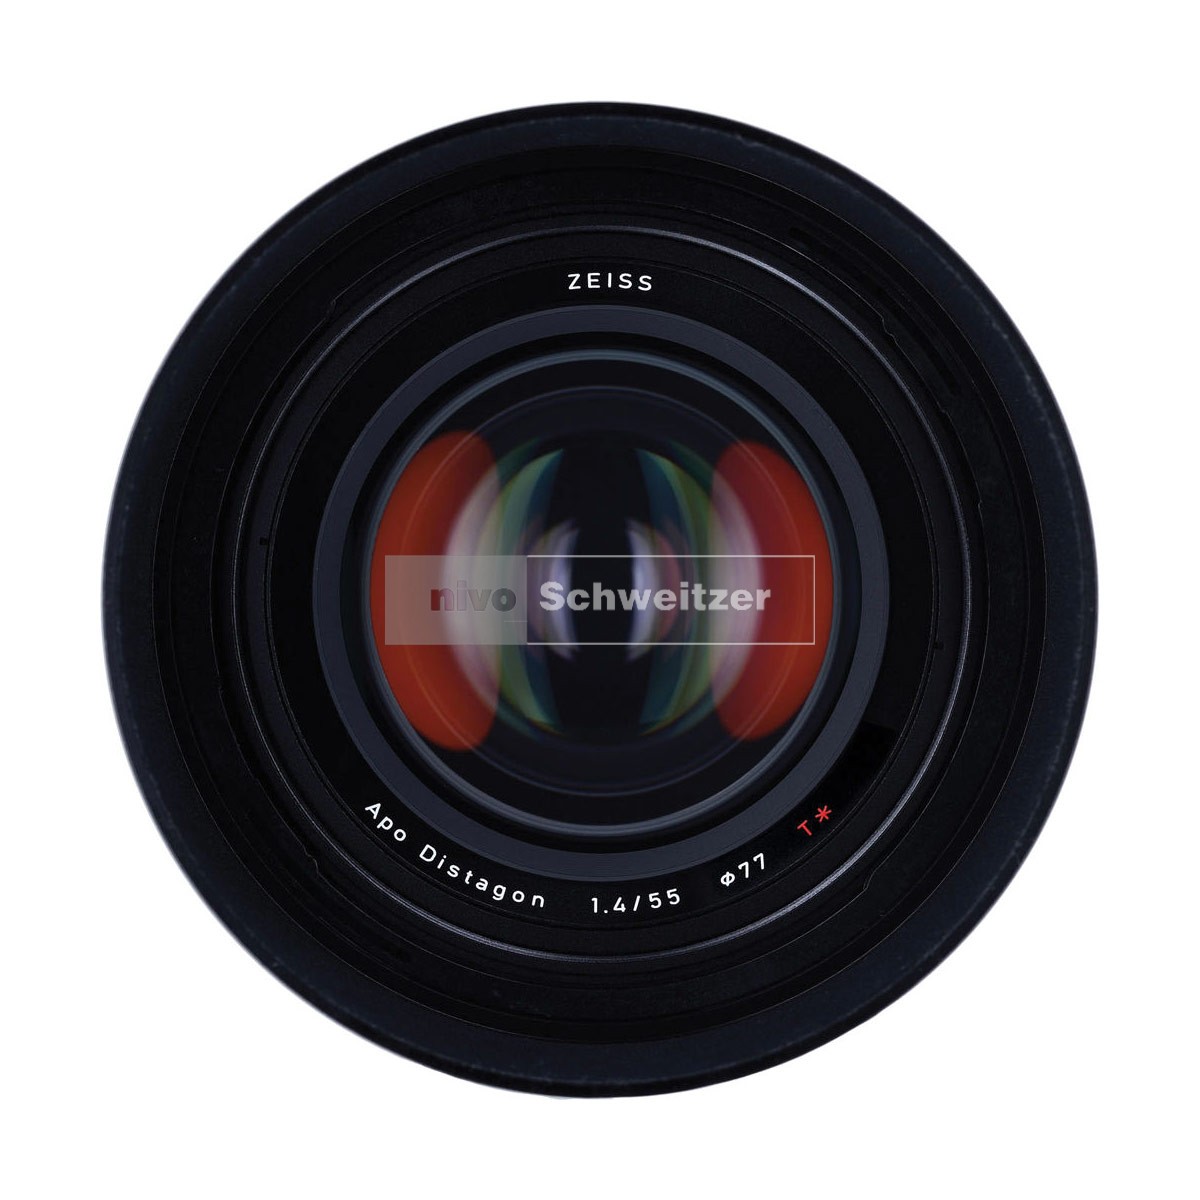 °ZEISS Otus ZE  55mm/1.4 Apo-Distagon T* [Canon EOS-bajonet - manual focus]   E77